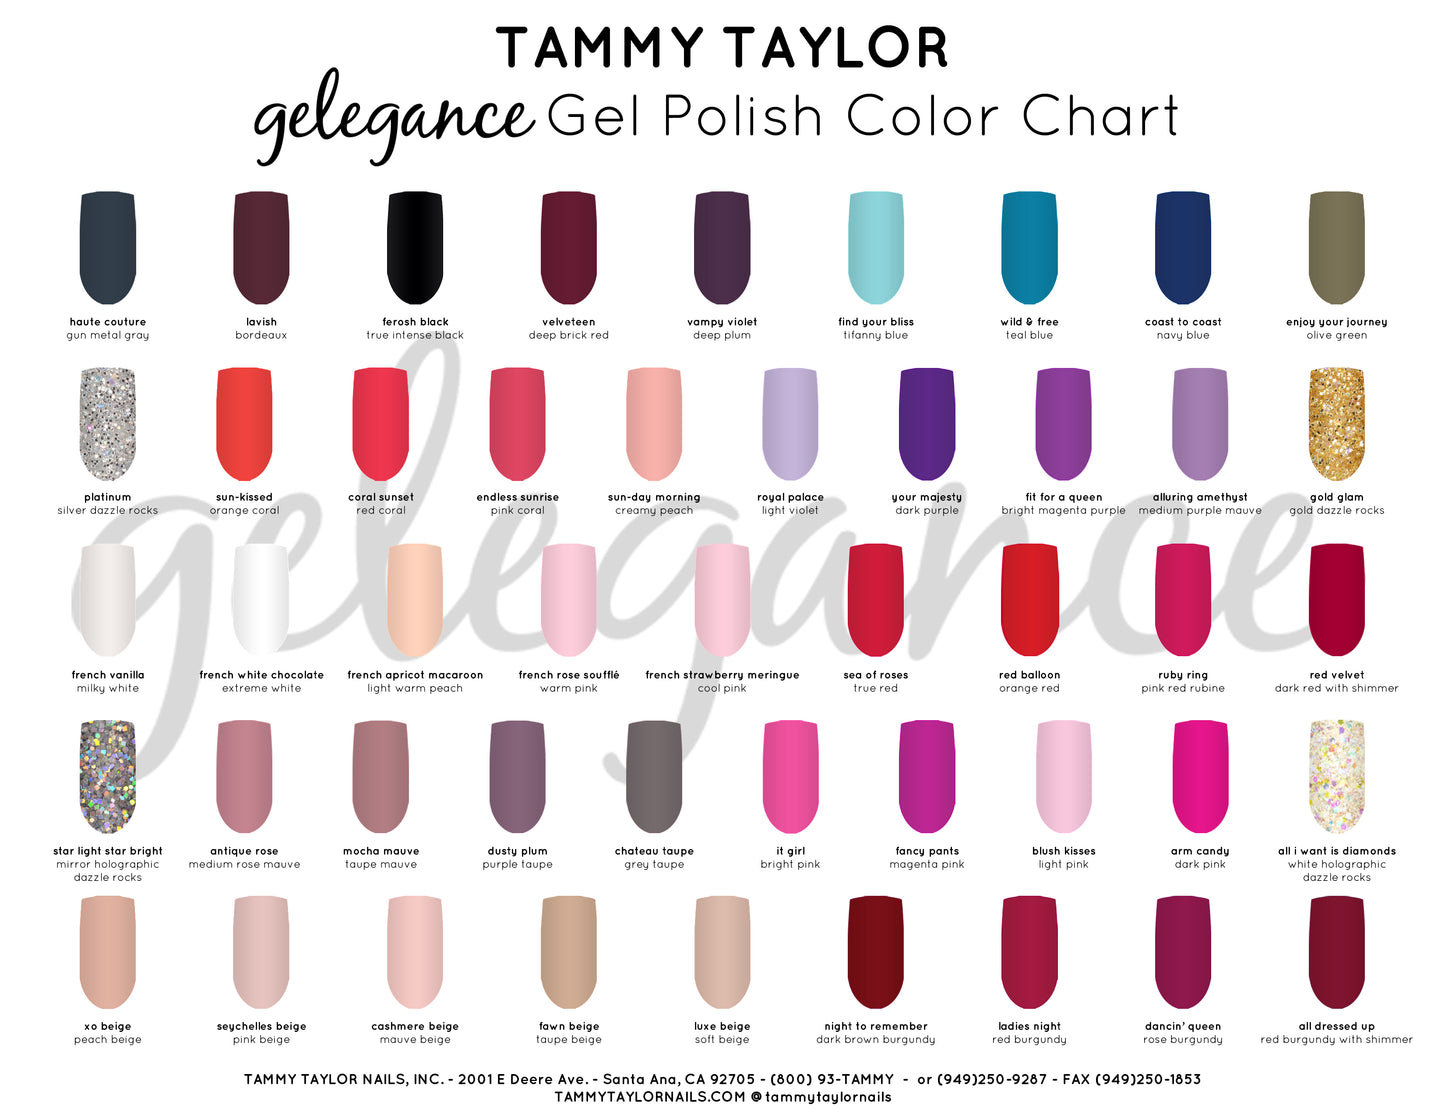 Tammy Taylor Nails - Manicura Pedicura Gelegance remojo de color en gel - Envío nacional gratis